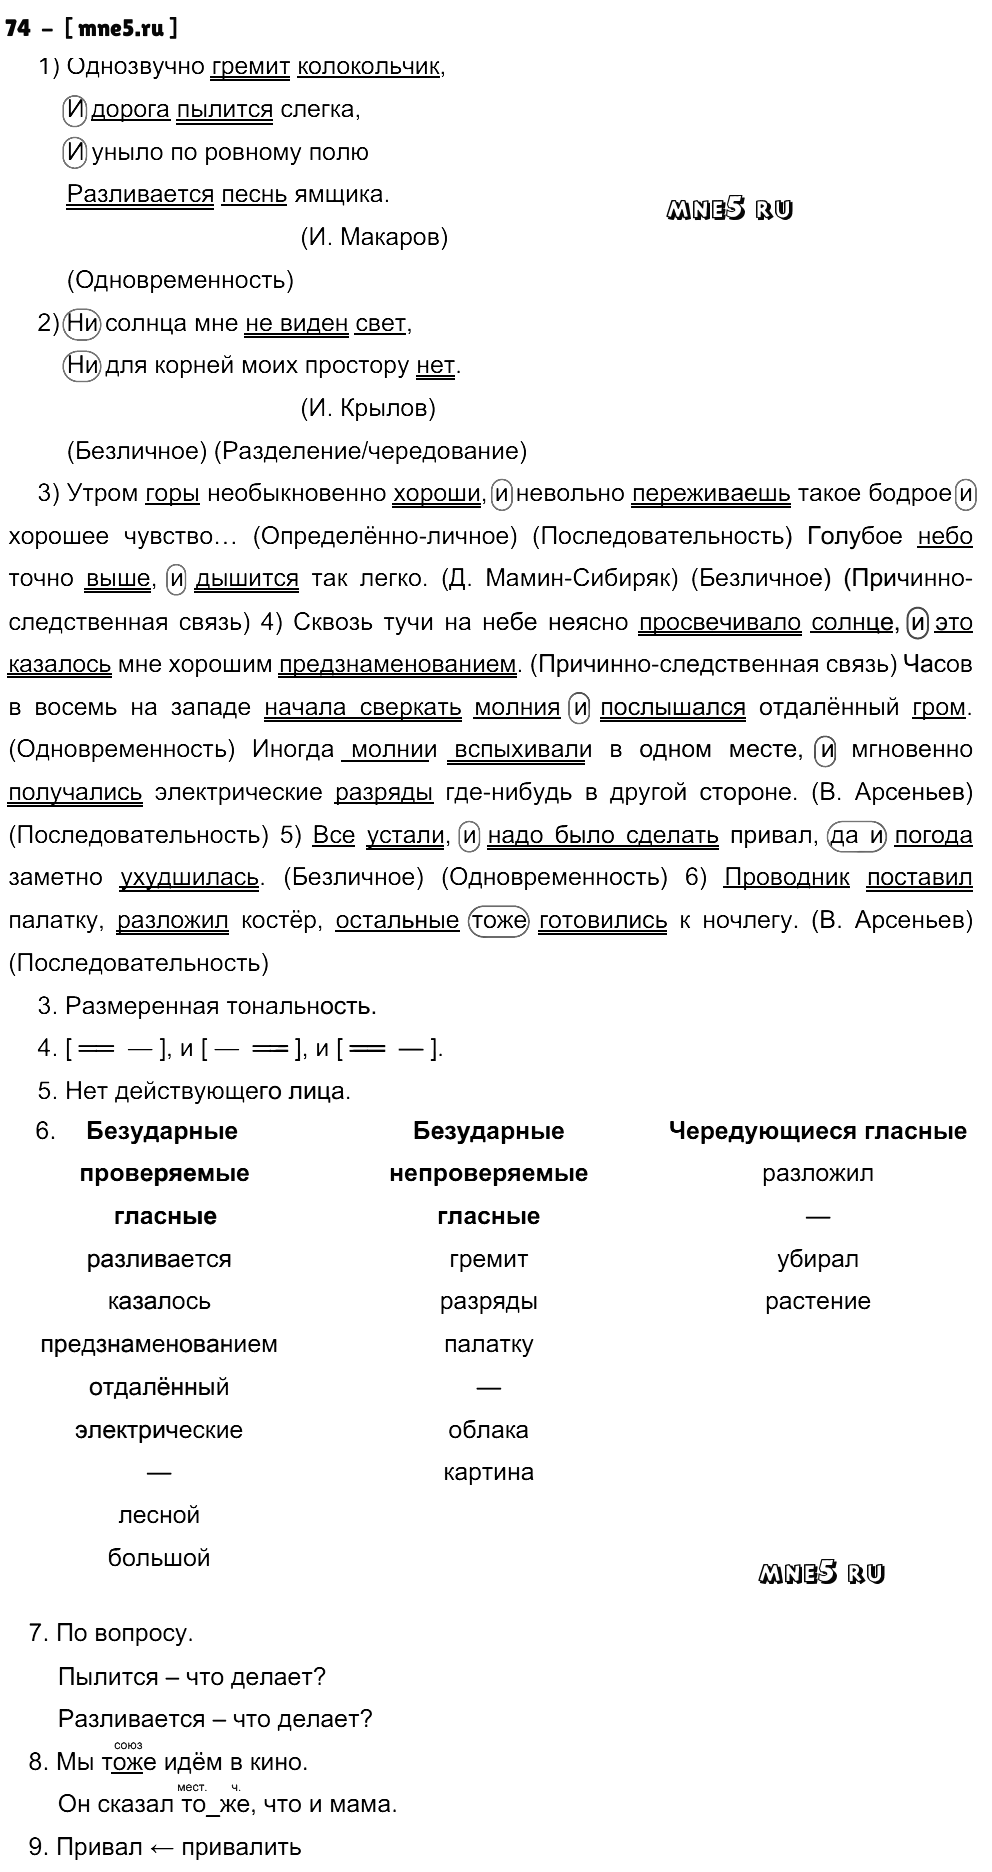 ГДЗ Русский язык 9 класс - 74